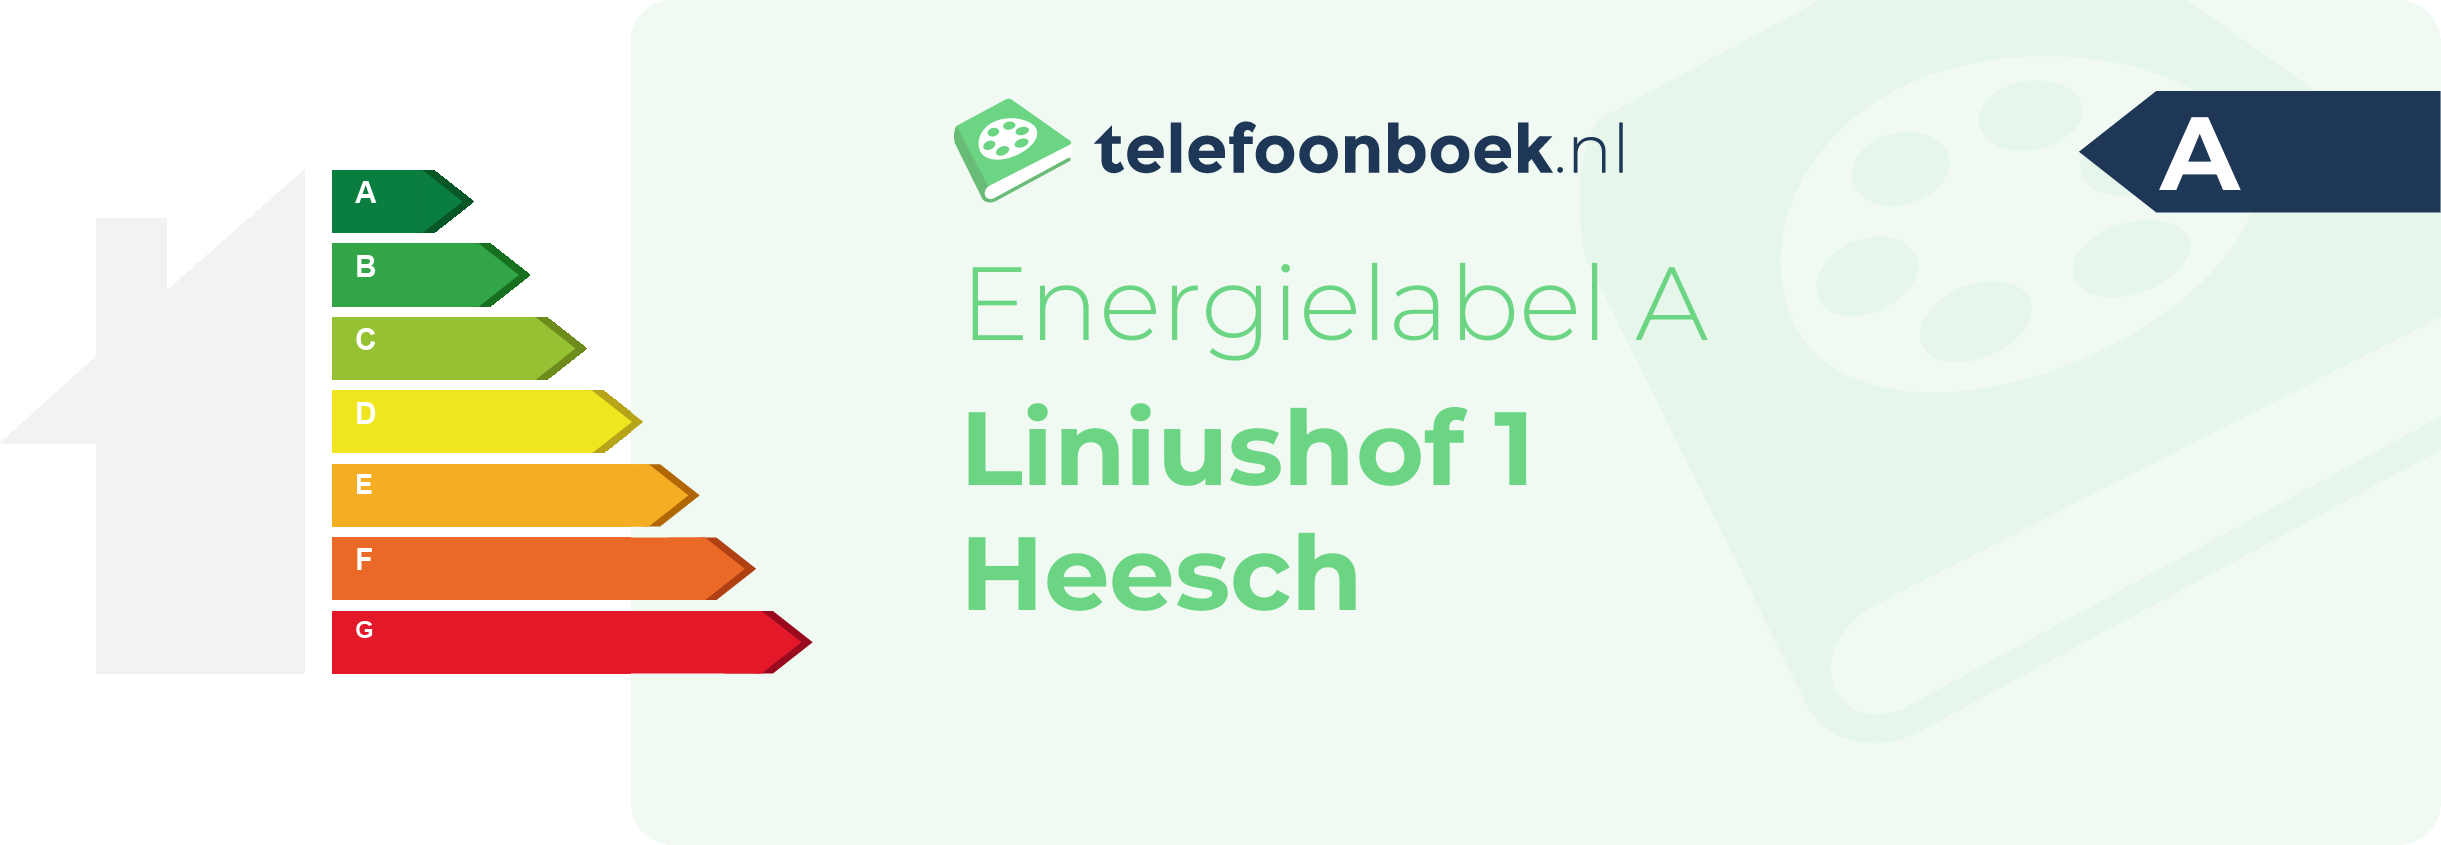 Energielabel Liniushof 1 Heesch